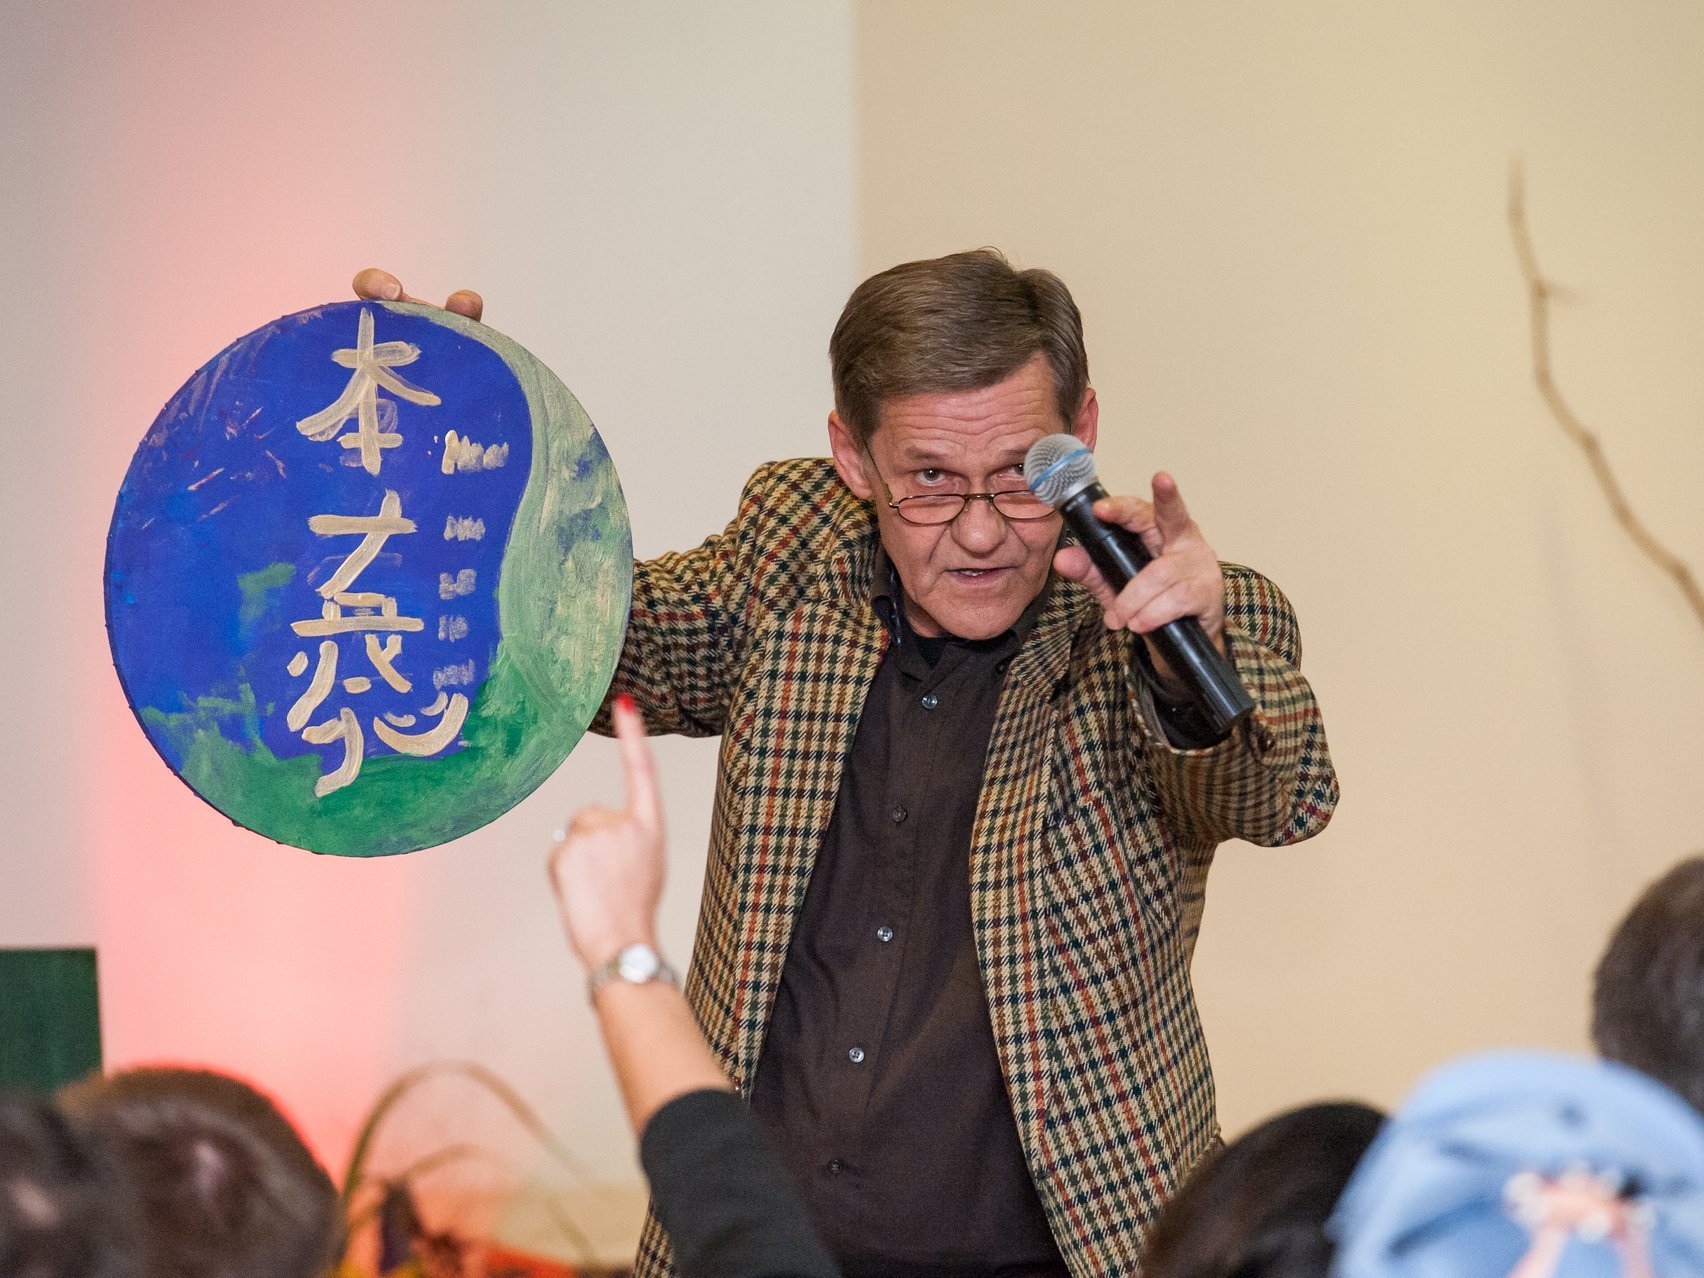 Ein älterer Mann mit karriertem Sakko und Mikrofon spricht zum Publikum und hält dabei eine runde Tafel mit chinesischen Schriftzeichen in die Luft